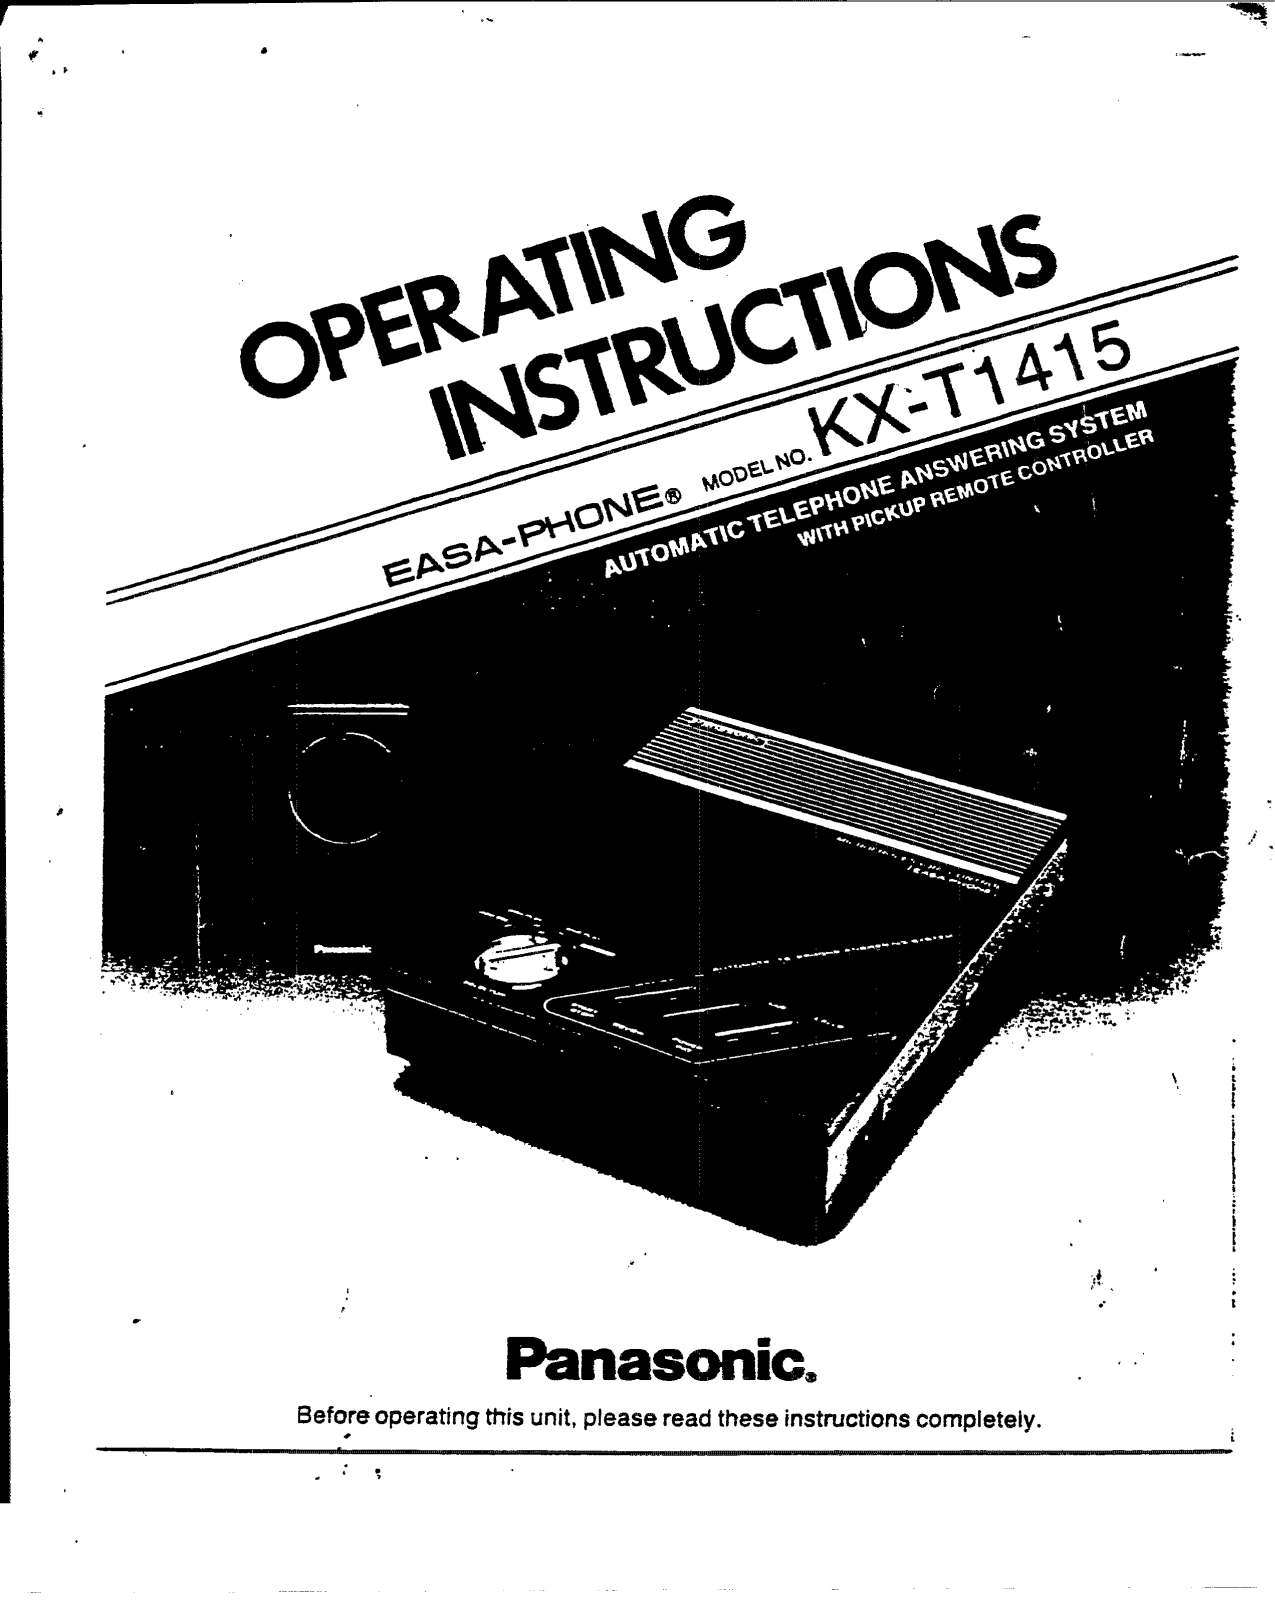 Panasonic kx-t1415 Operation Manual